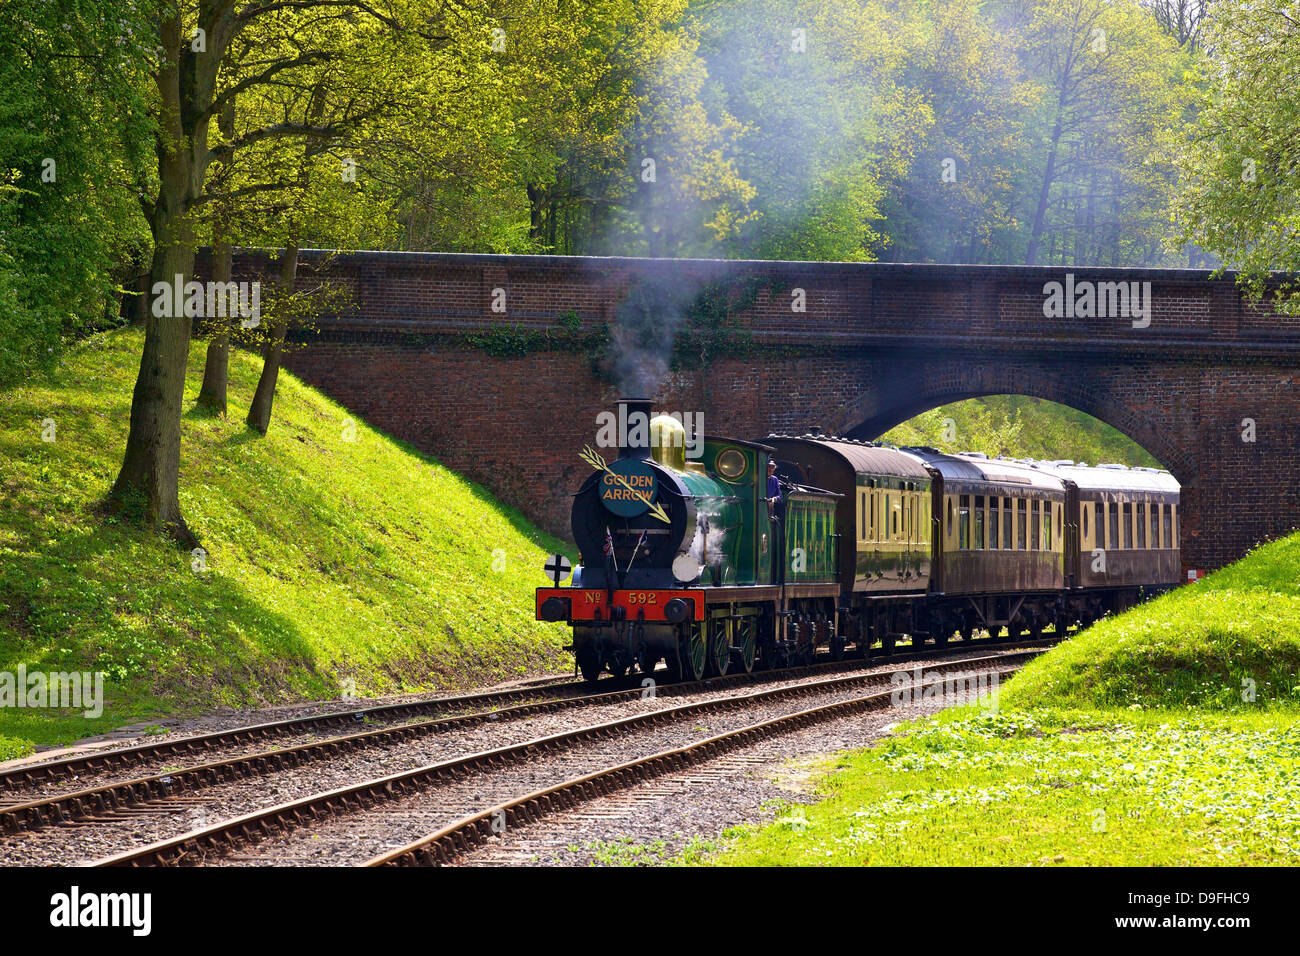 Tren de vapor en Bluebell Railway, Horsted Keynes, West Sussex, Inglaterra, Reino Unido. Foto de stock